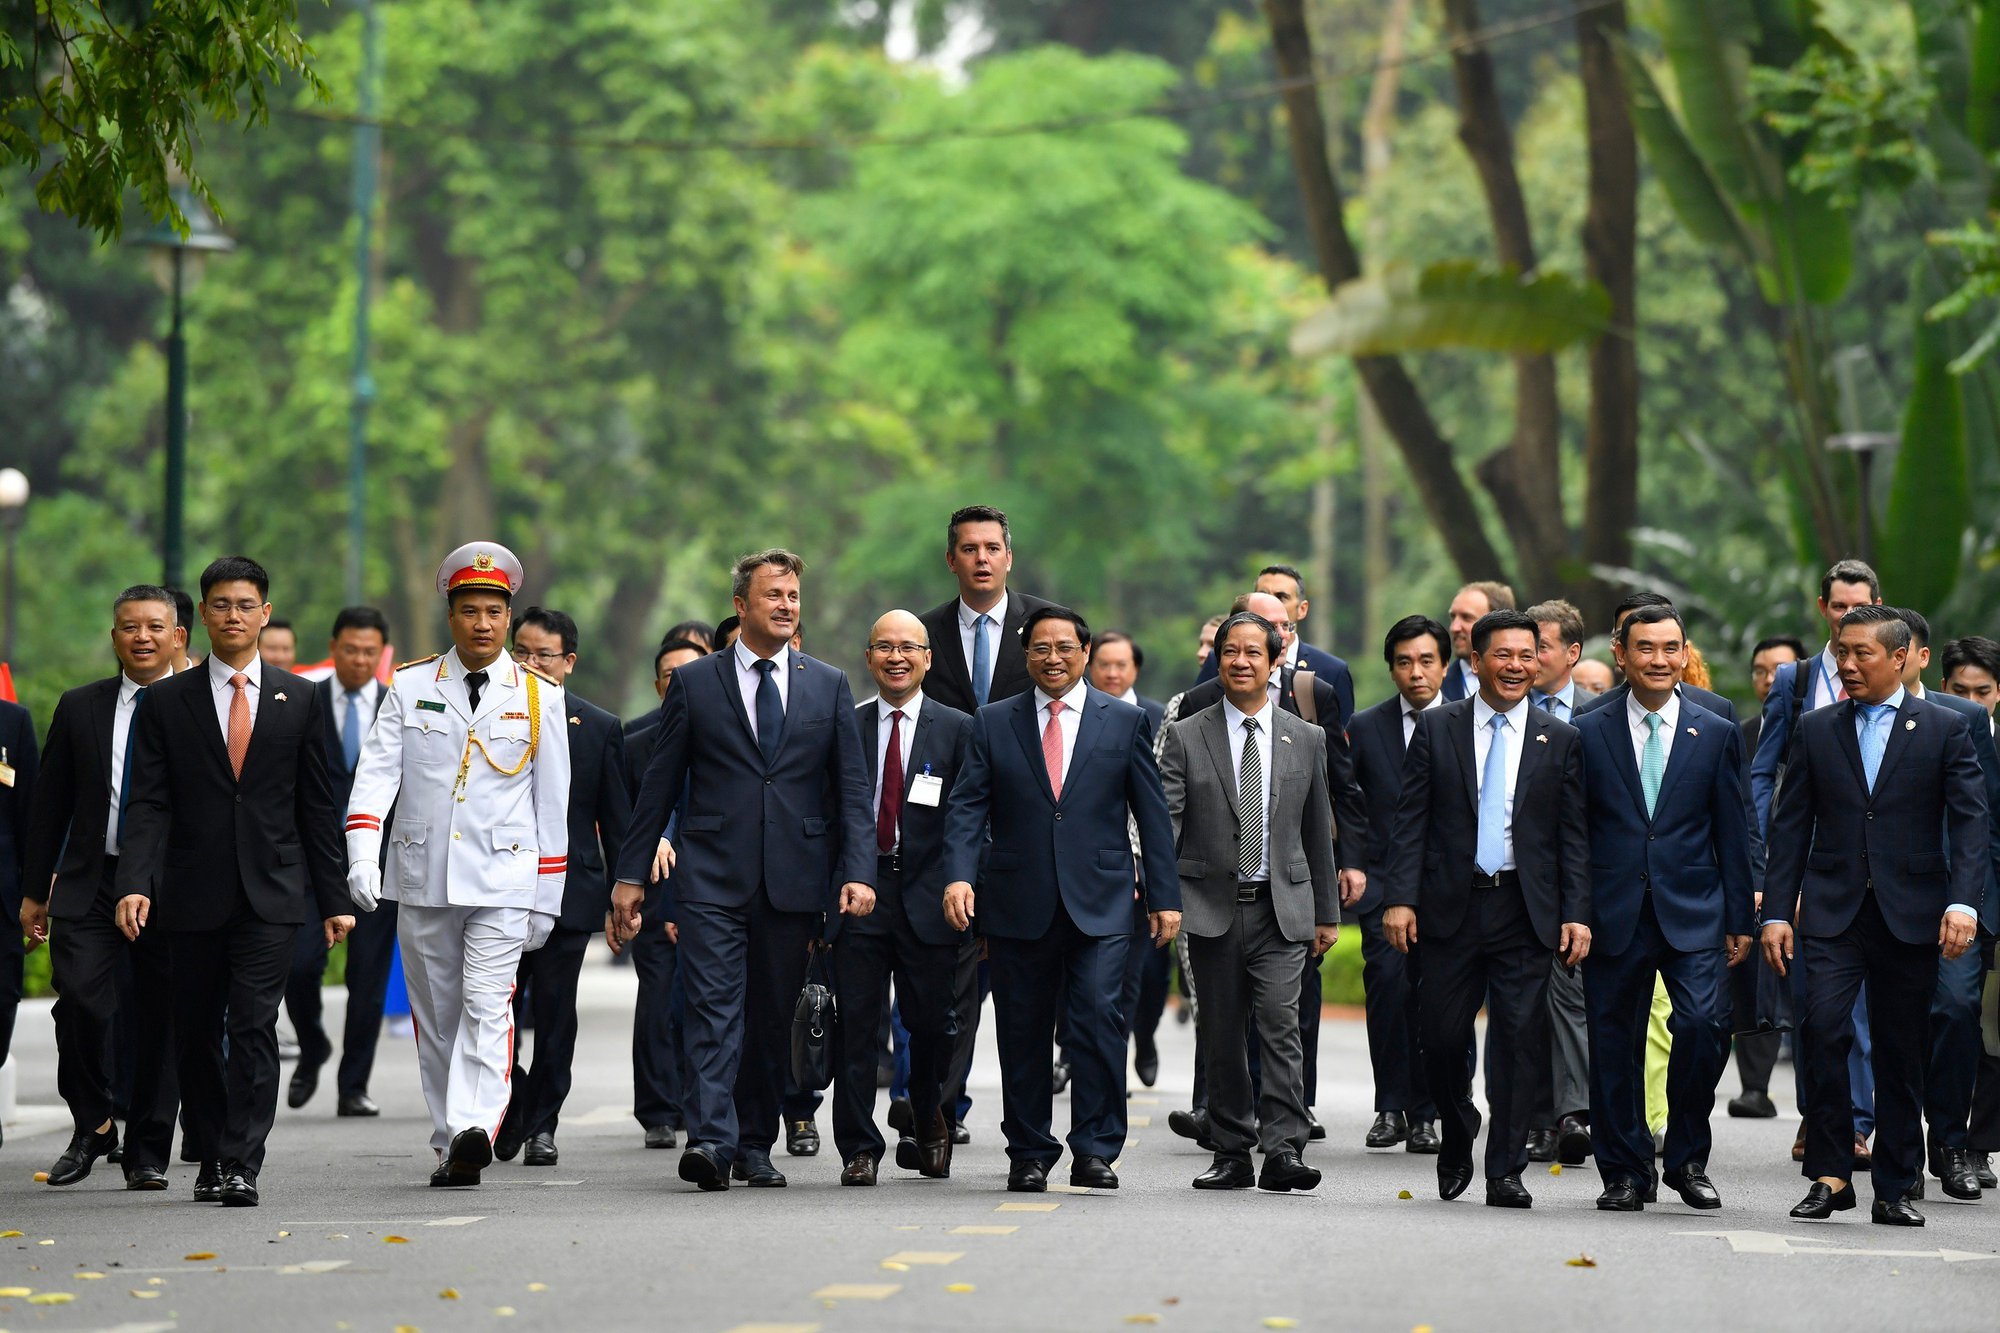 Chùm ảnh: Thủ tướng Phạm Minh Chính đón, hội đàm với Thủ tướng Luxembourg - Ảnh 7.